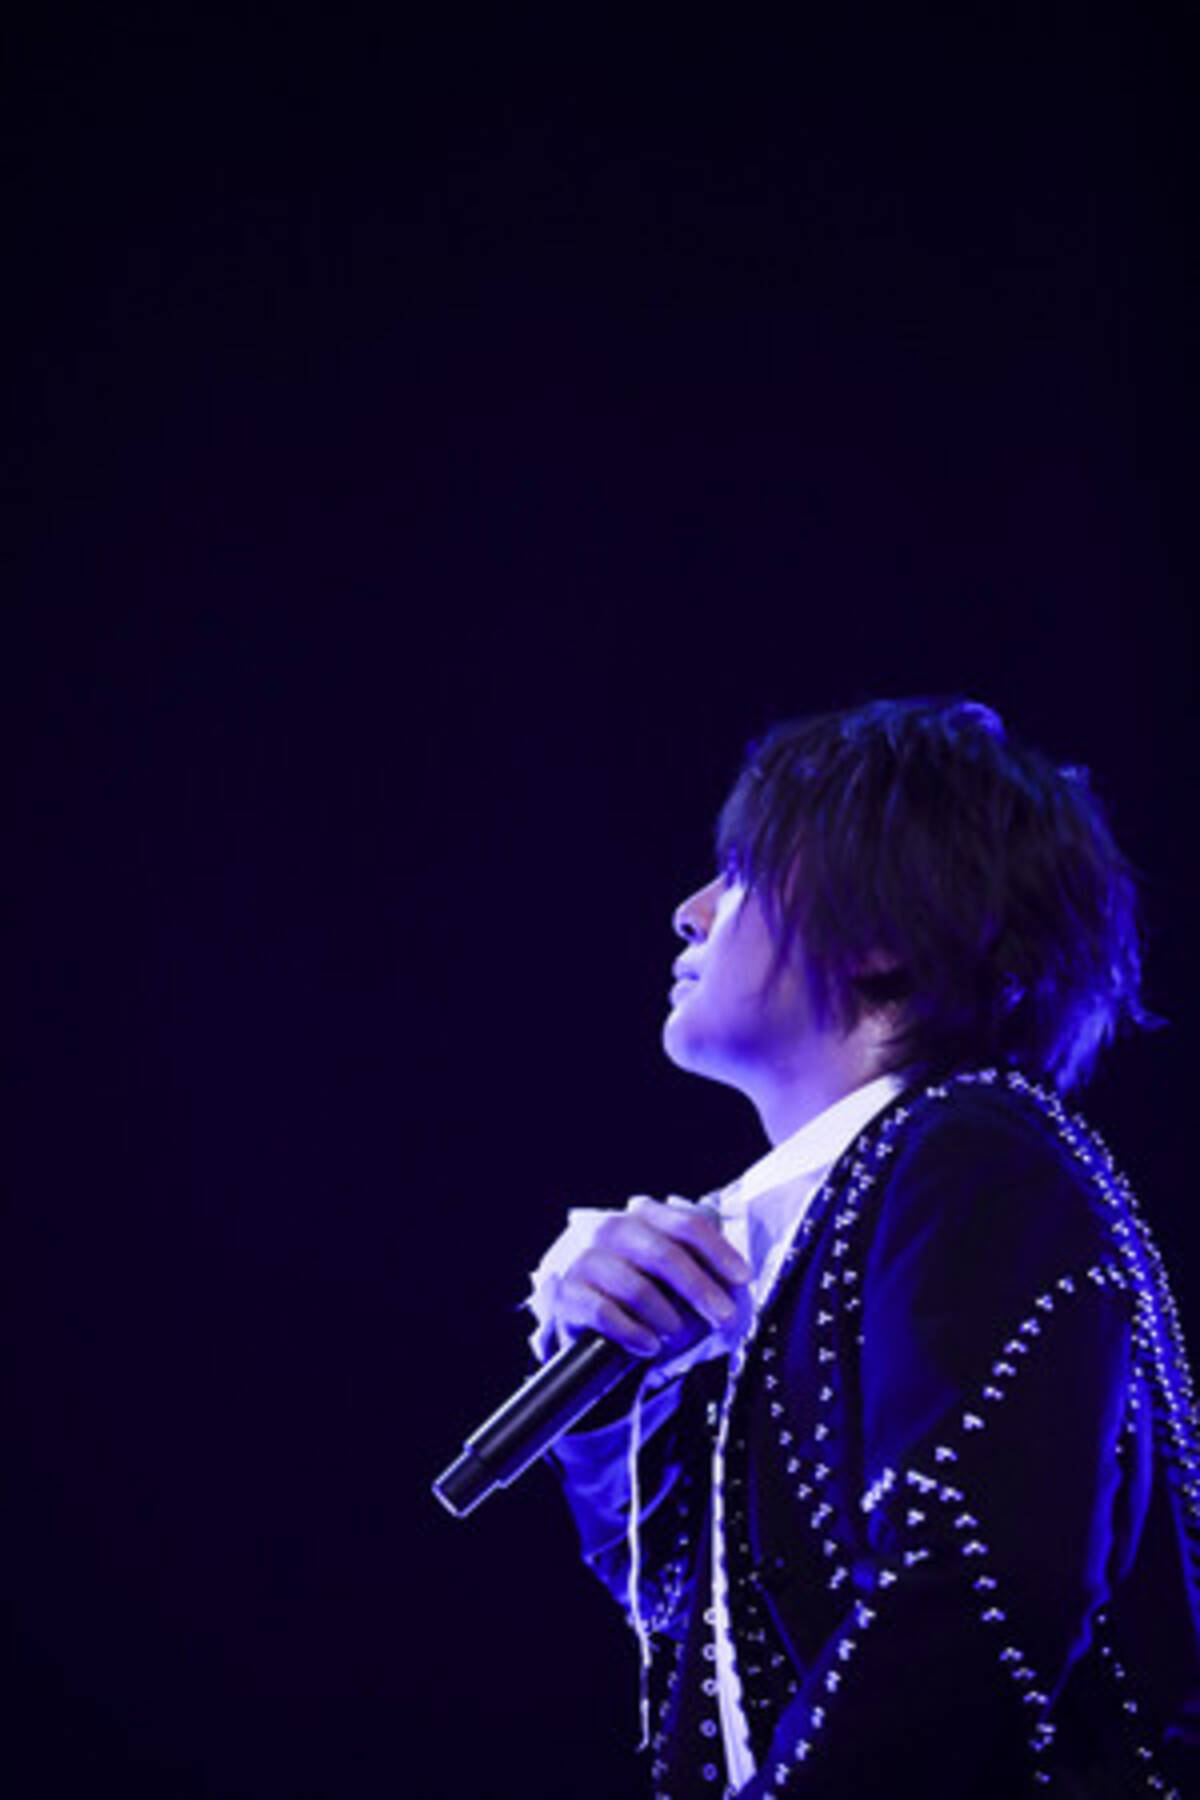 浦井健治 th Anniversary Concert Piece ライブレポート到着 21年4月30日 エキサイトニュース 4 4